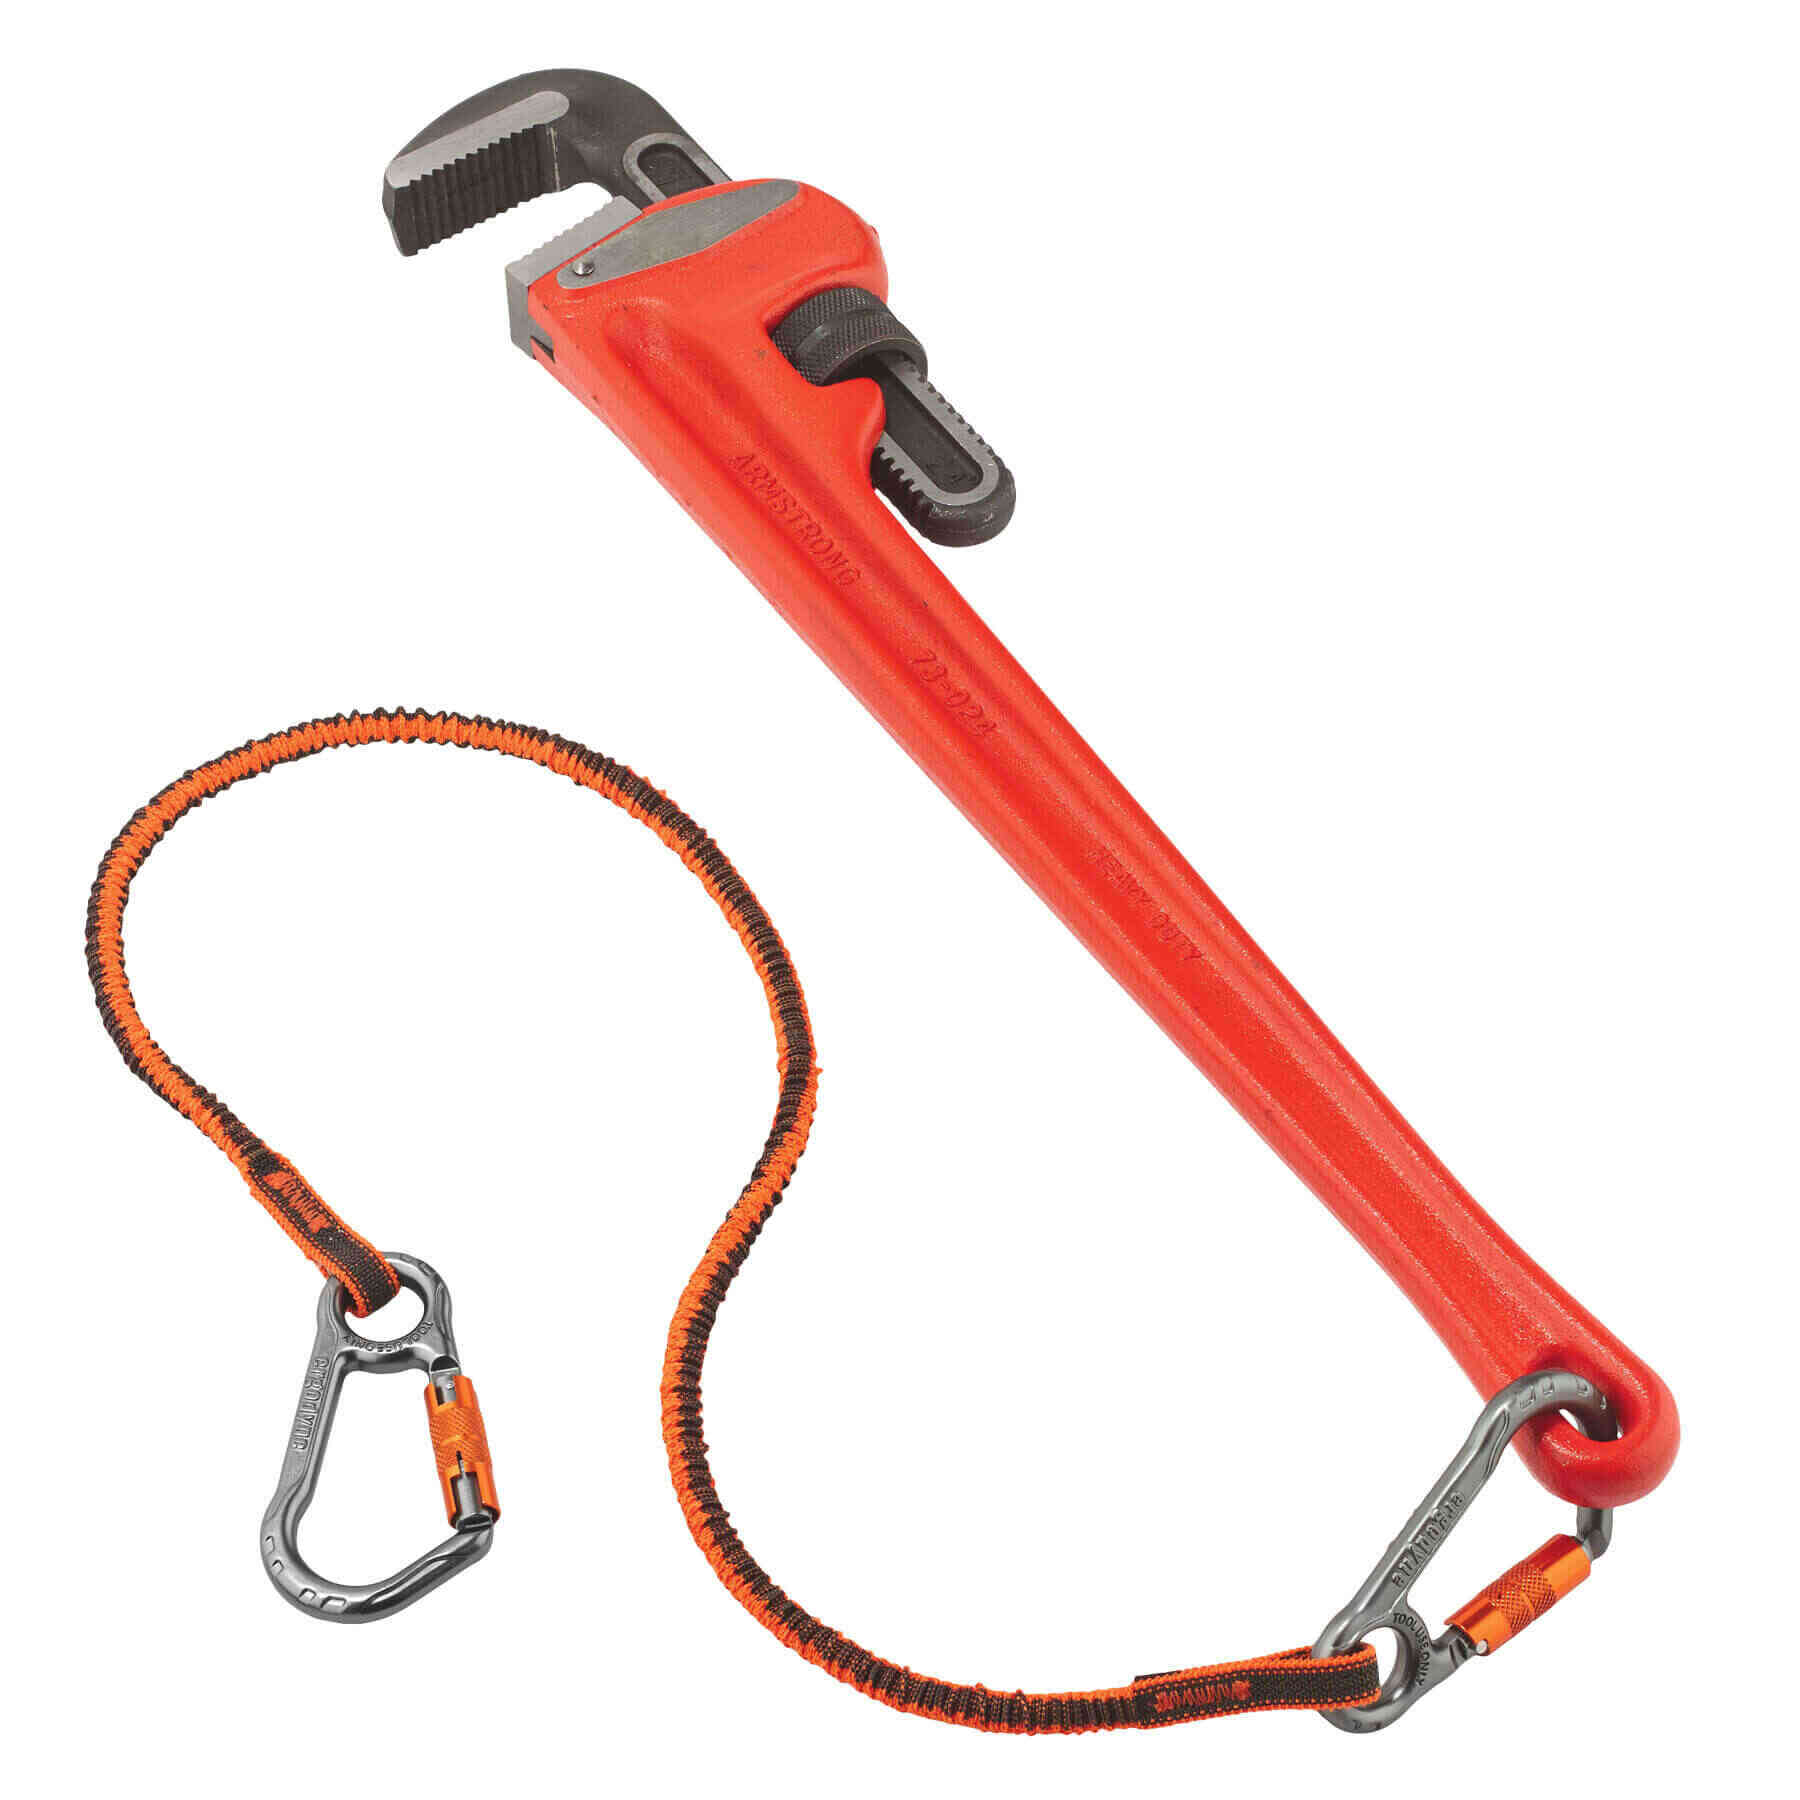 10 lb. Carabiner and Loop Strap Tool Lanyard – KEY-BAK